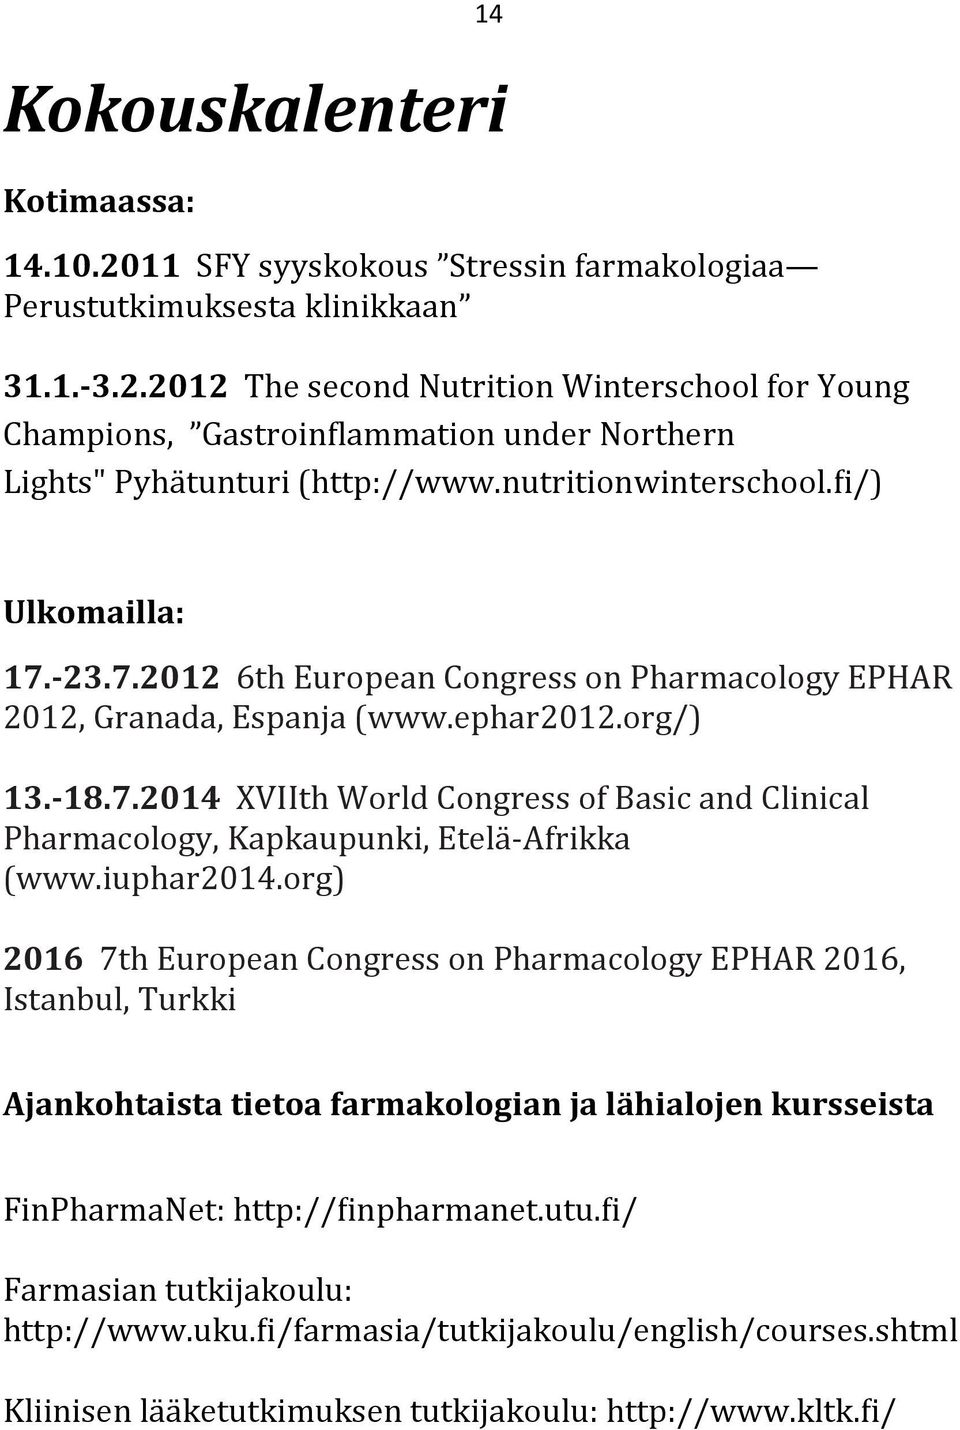 iuphar2014.org) 2016 7th European Congress on Pharmacology EPHAR 2016, Istanbul, Turkki Ajankohtaista tietoa farmakologian ja lähialojen kursseista FinPharmaNet: http:// inpharmanet.utu.